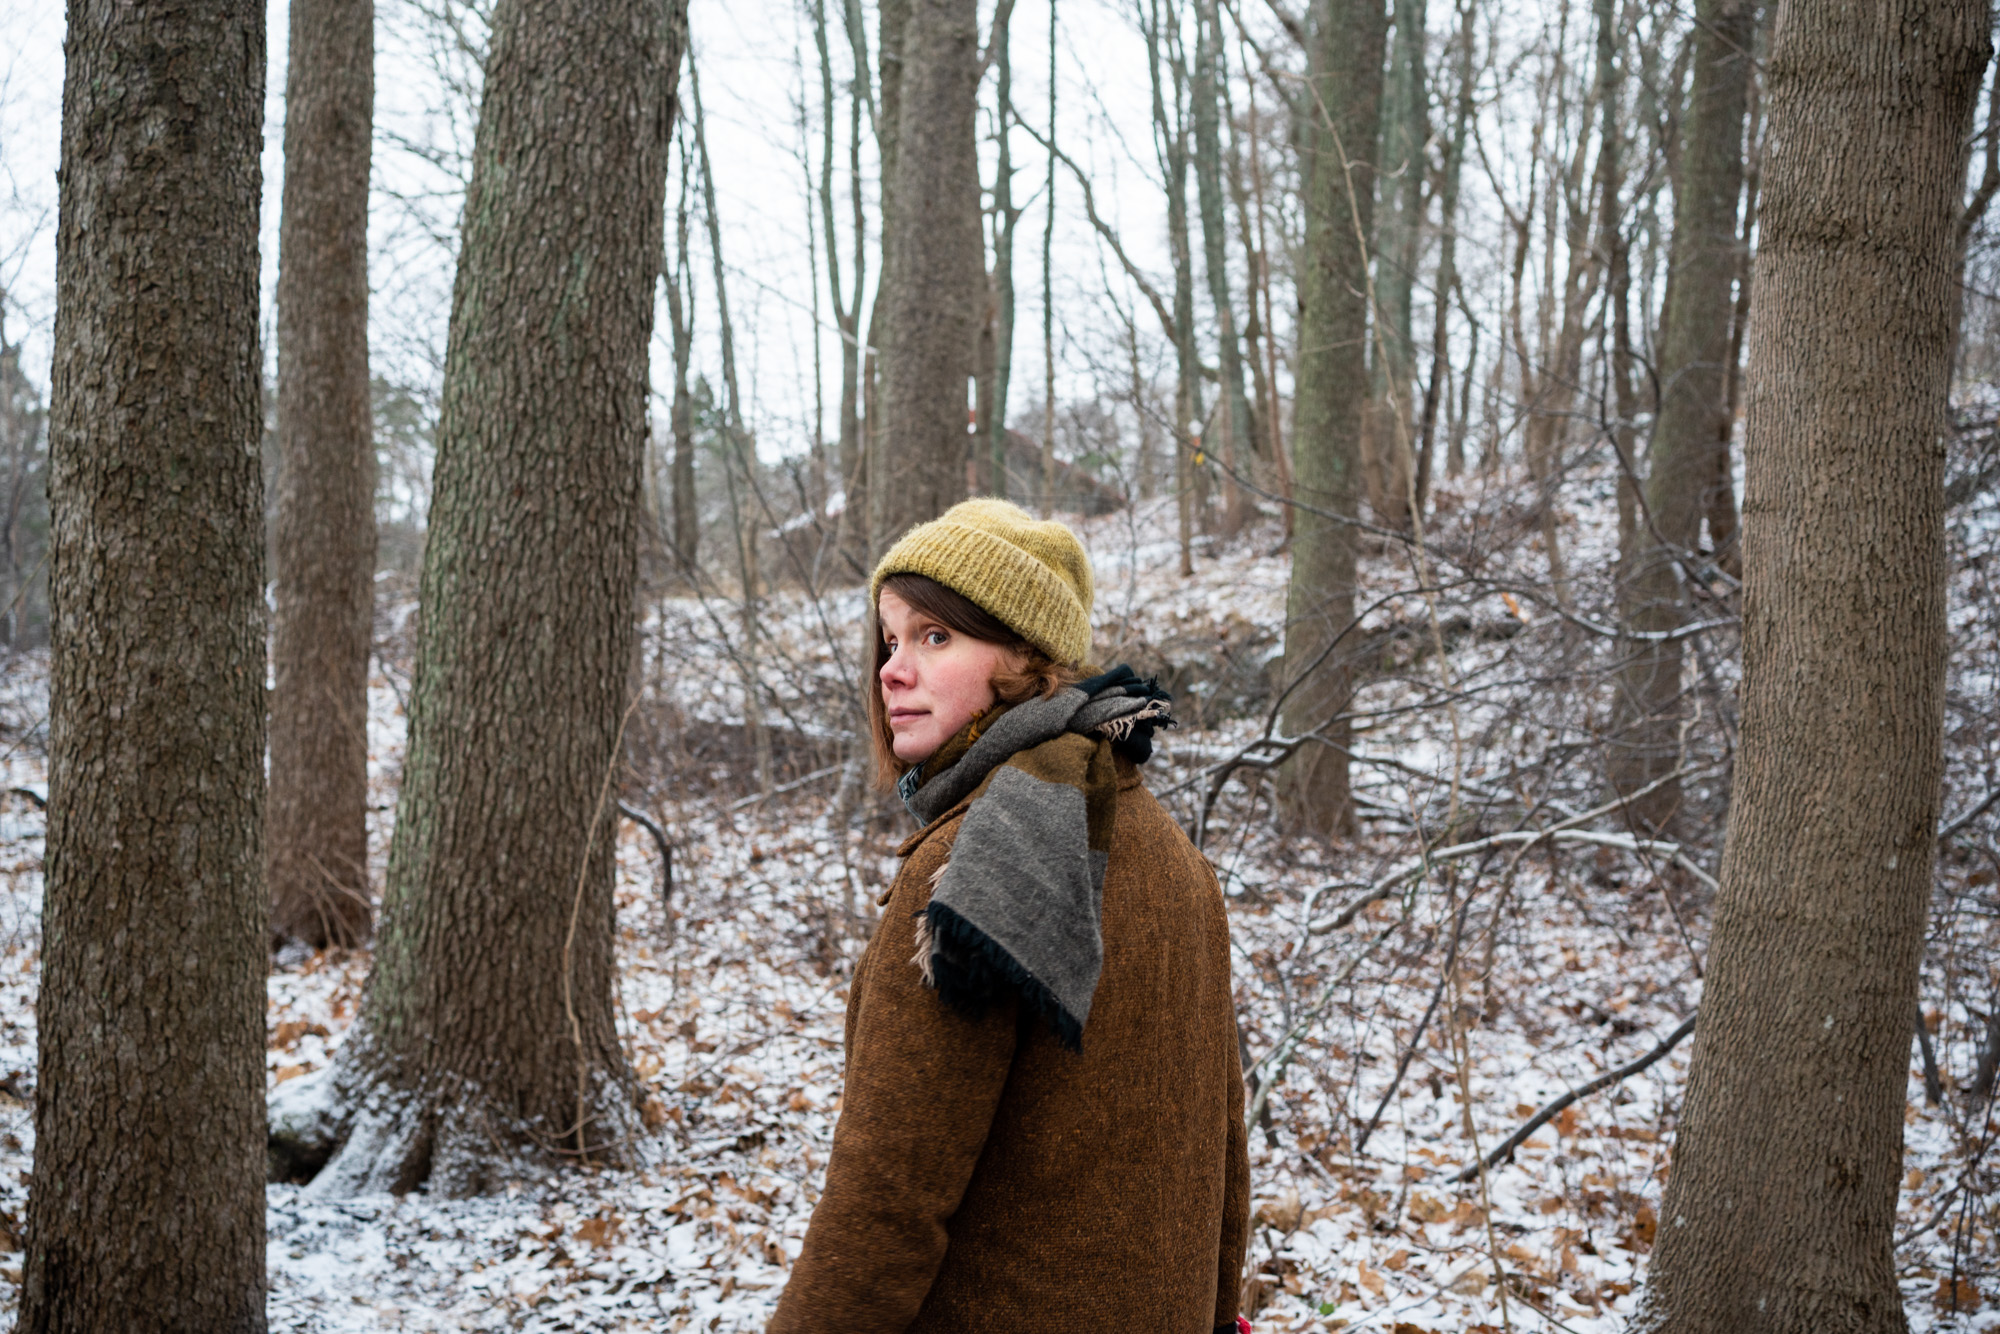 Naisoletettu kurkkaa olkansa yli kohti kameraa lumisessa metsässä.